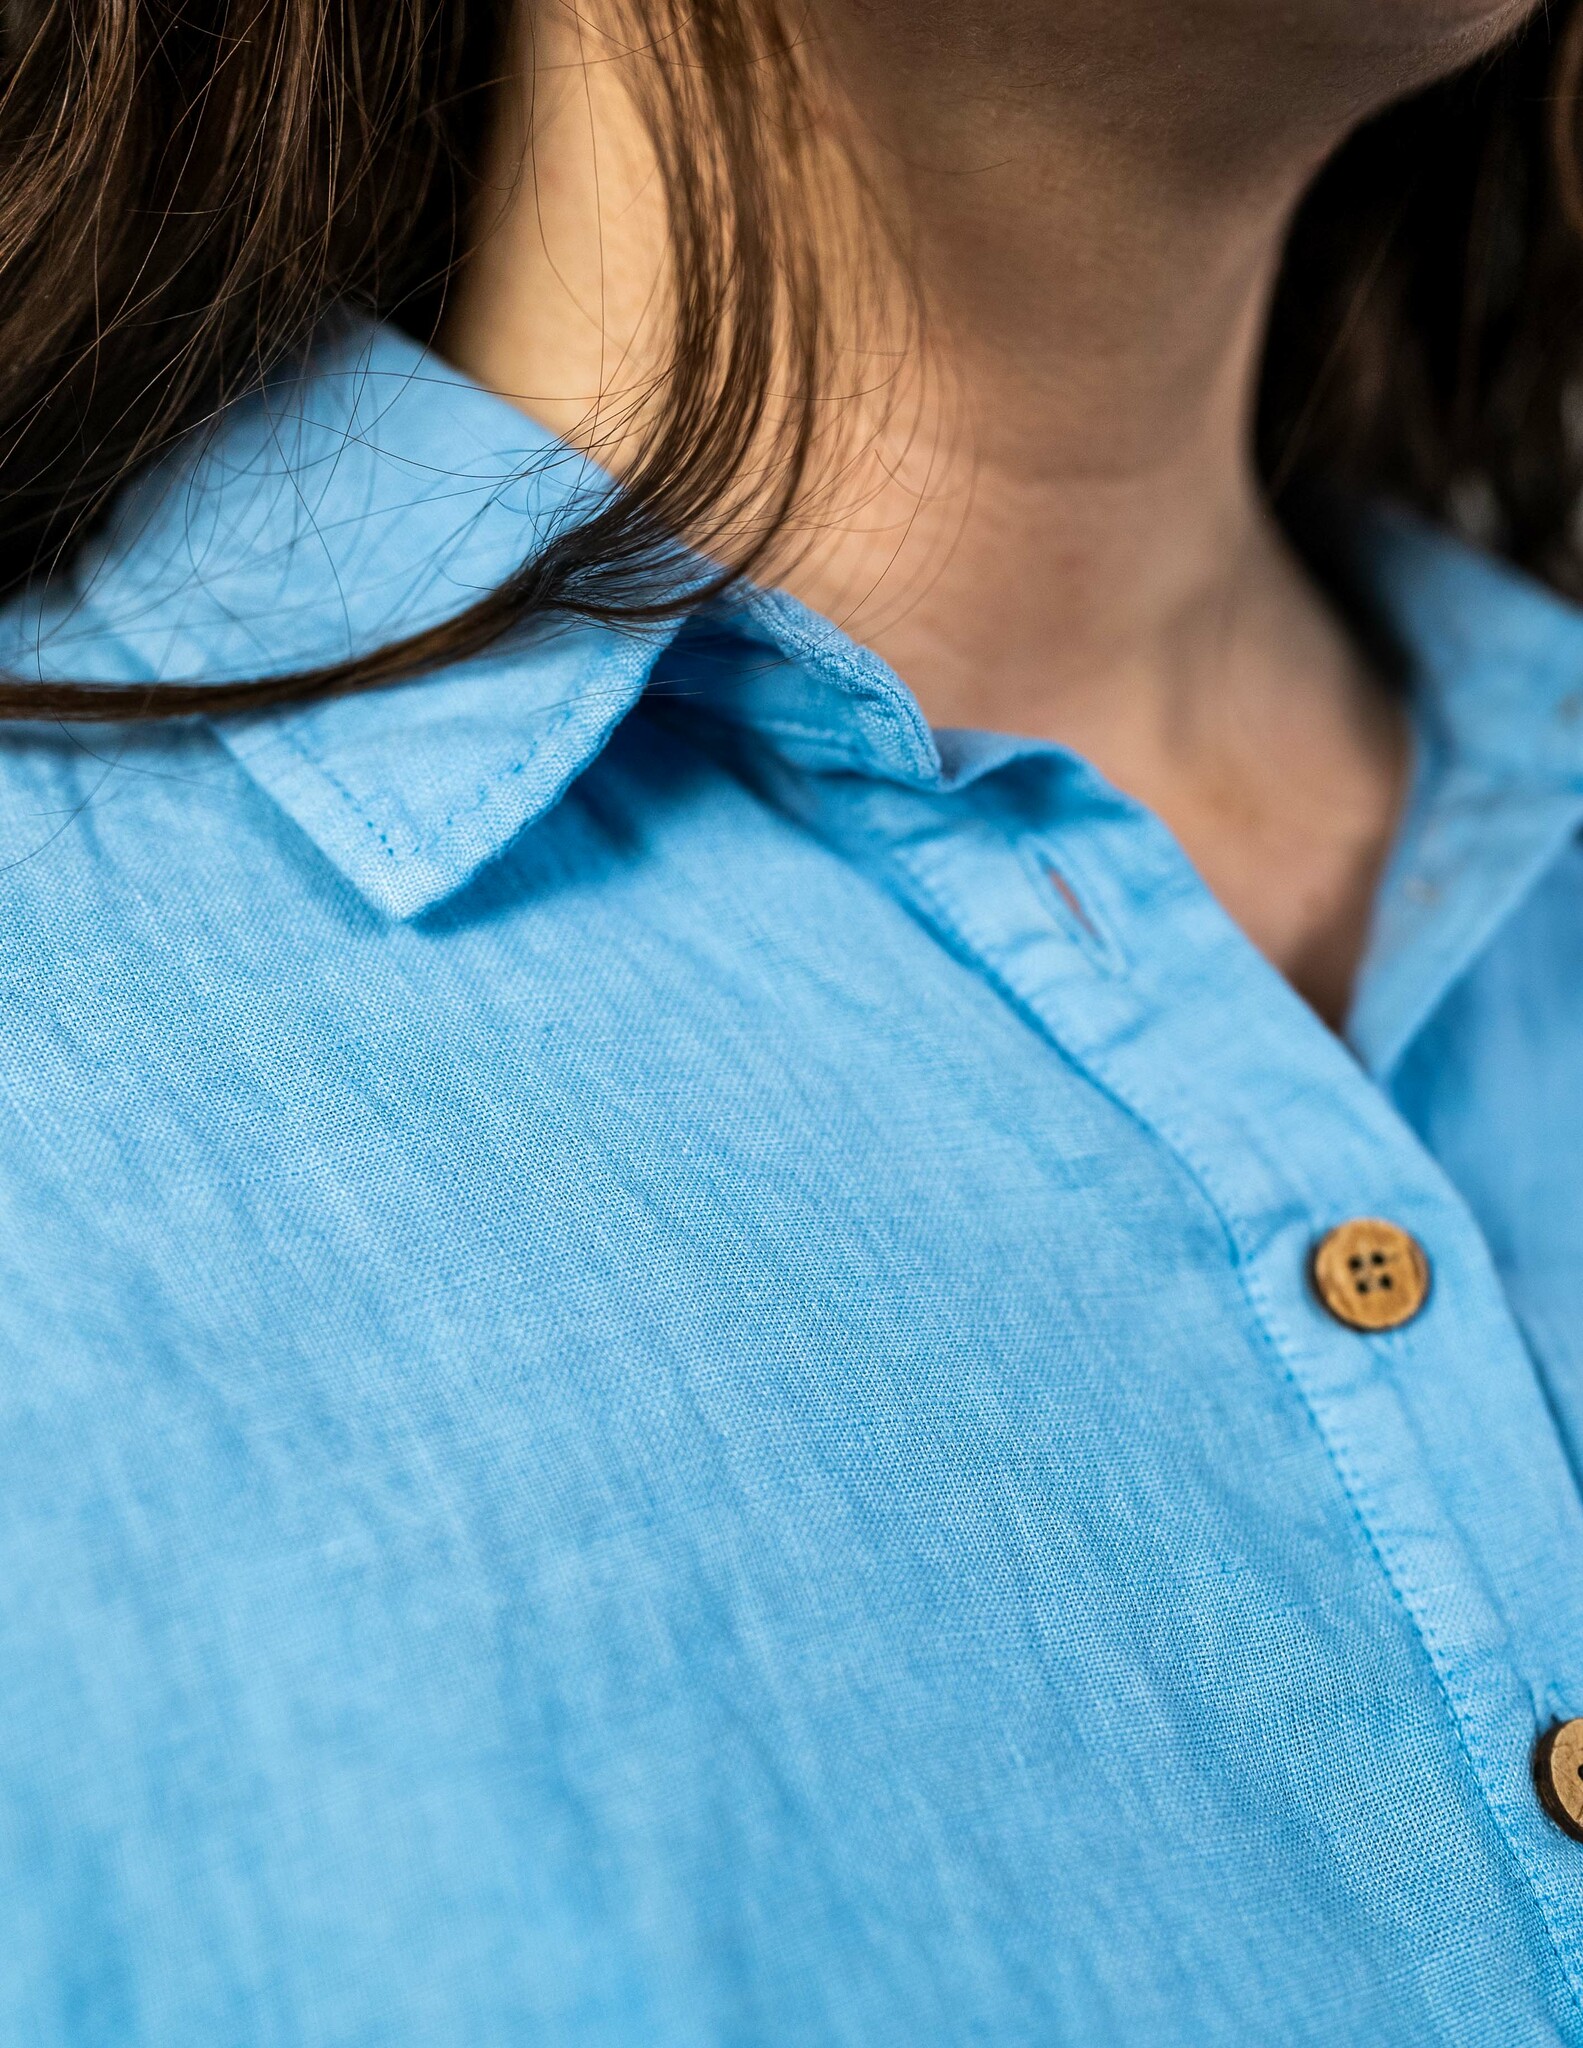 Ljus blå linneskjorta dam I Sval & luftig skjorta linne material I Hållbara sköna linneskjortor dam I Blå skjorta linne I Snygg damskjorta linne I Skjorta kort ärm dam I Blå skjorta oversize